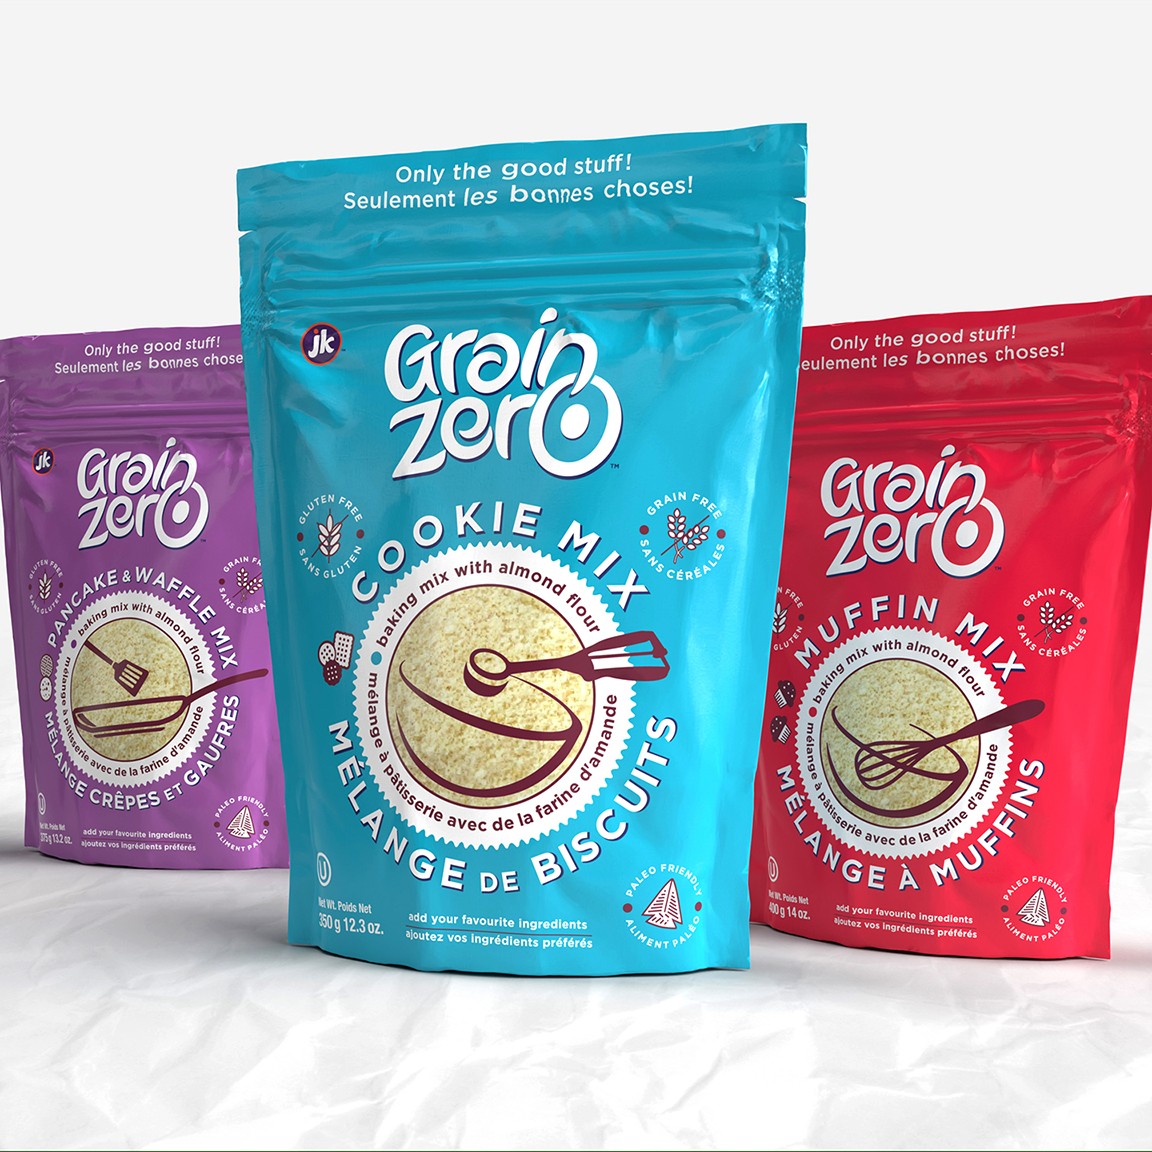 Studiobubble Designs a New Look for Grain Zero Granola